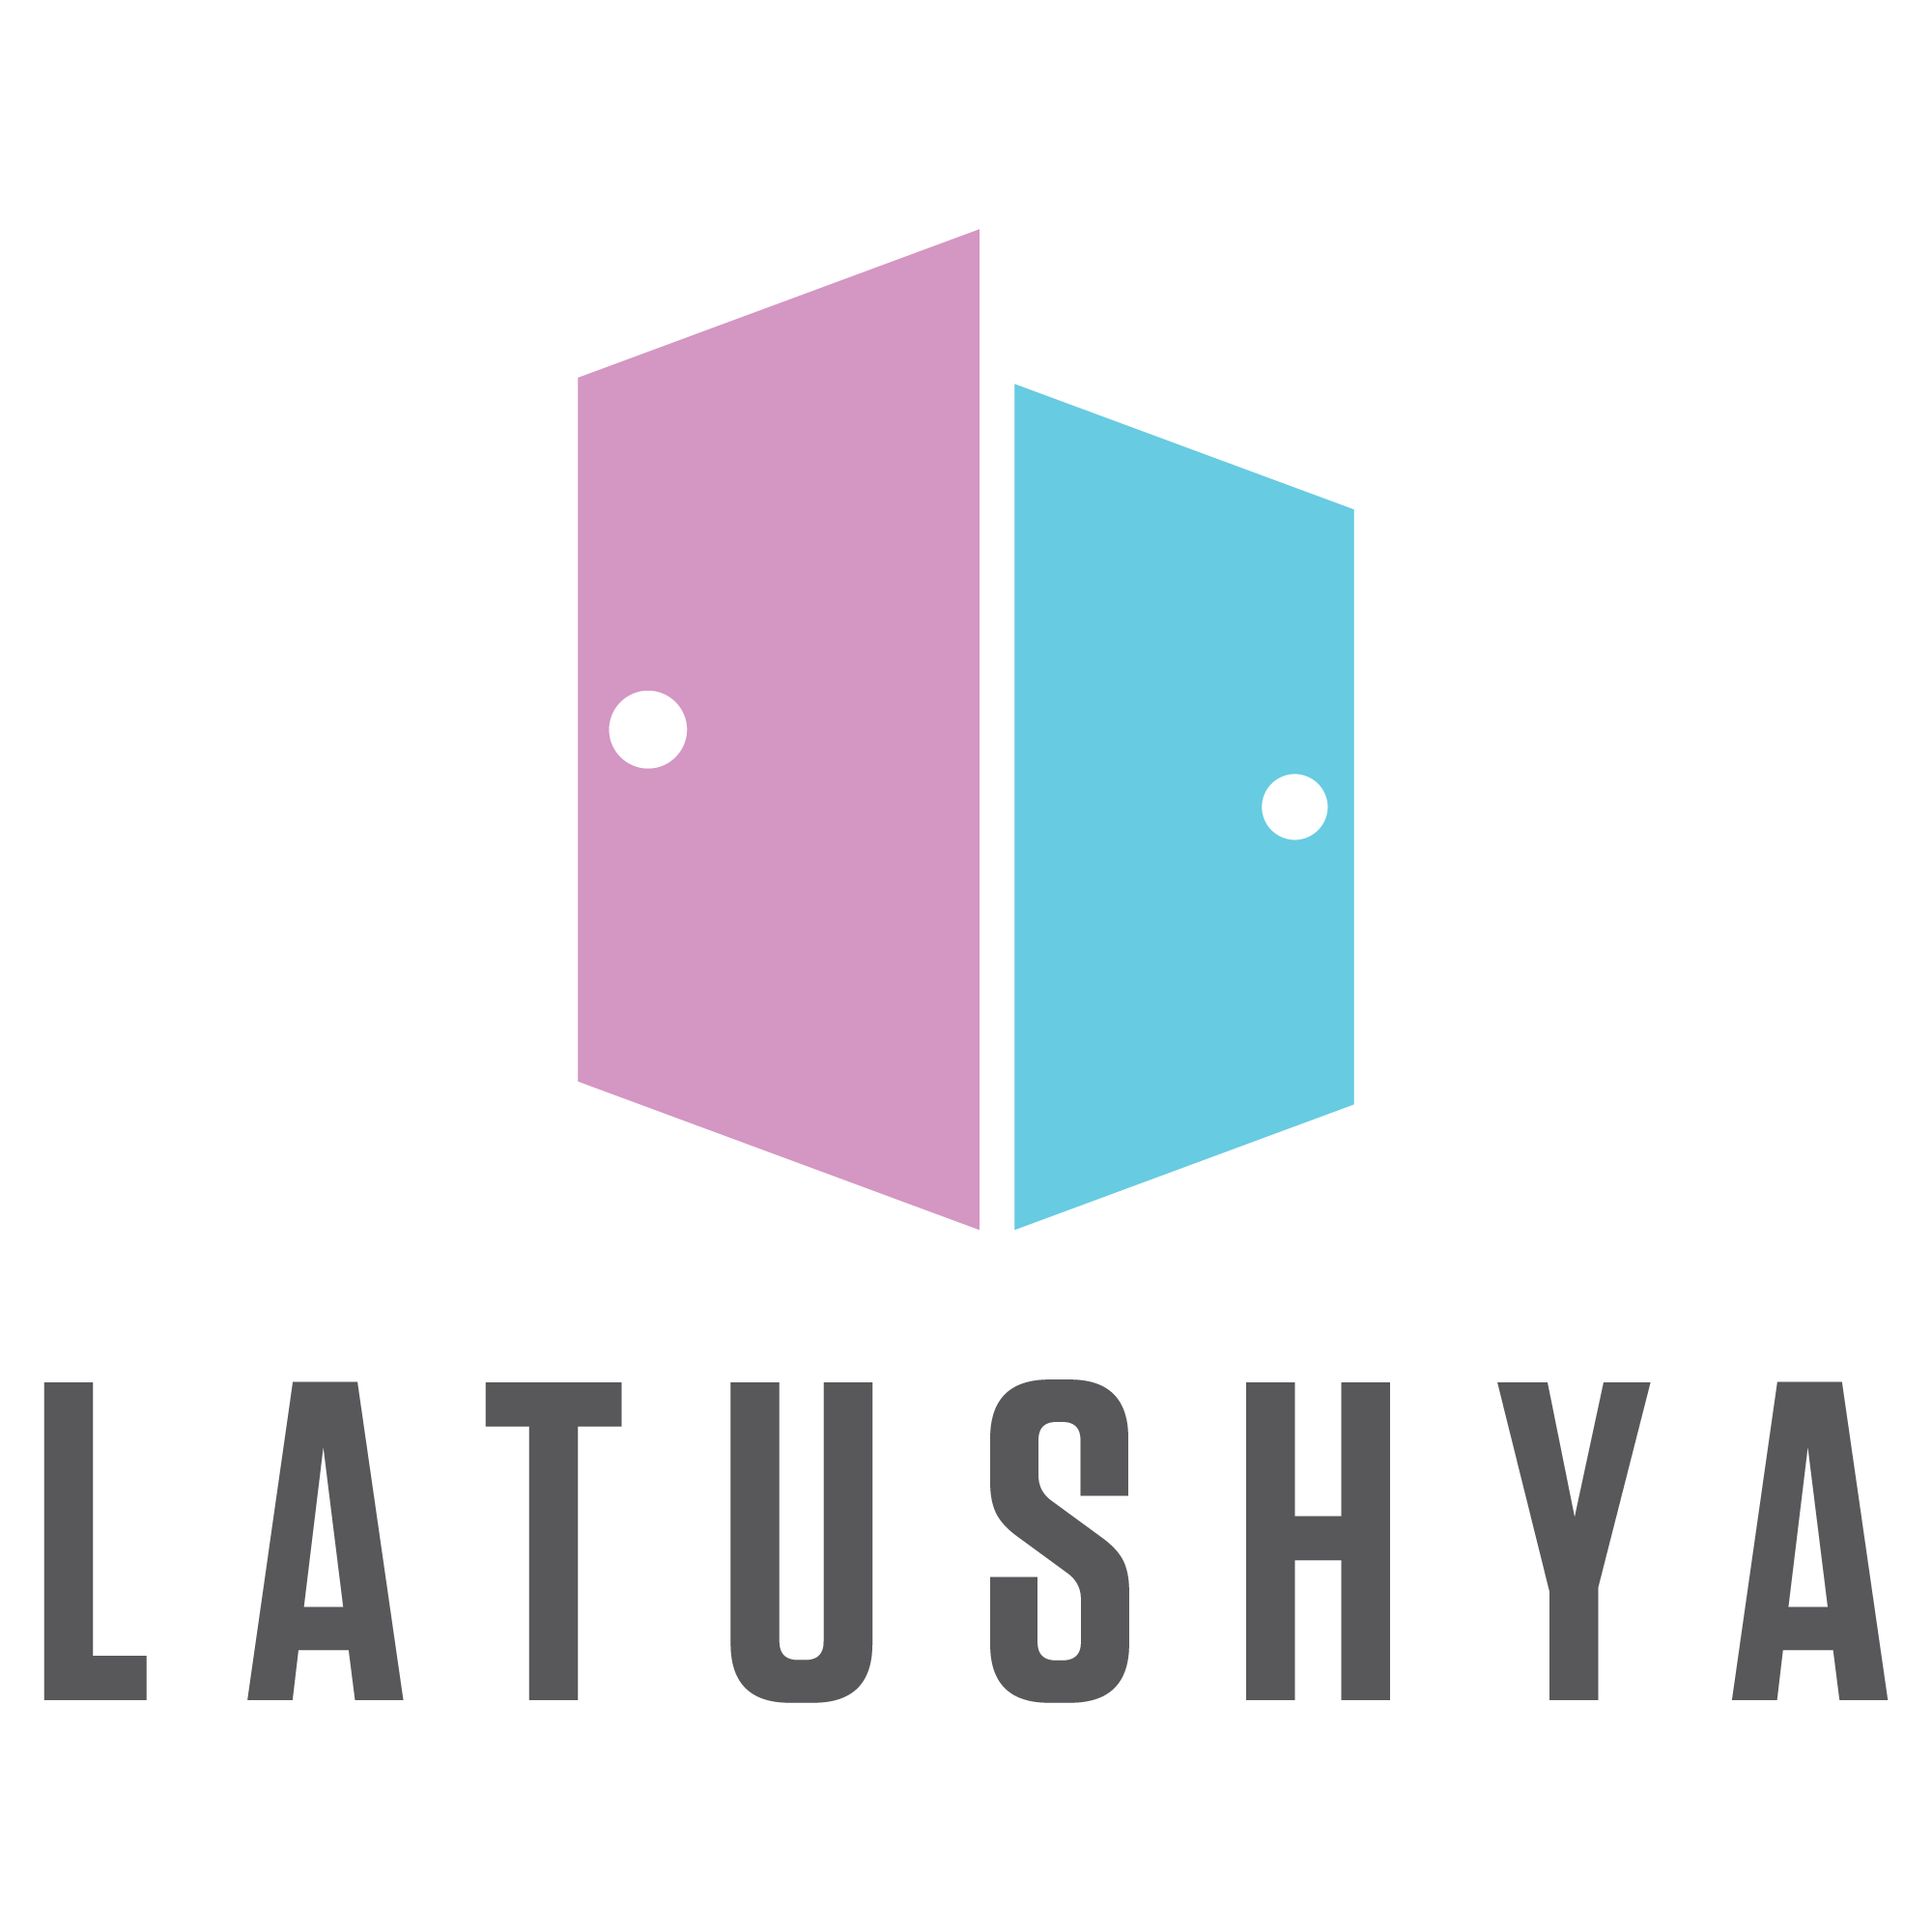 latushya